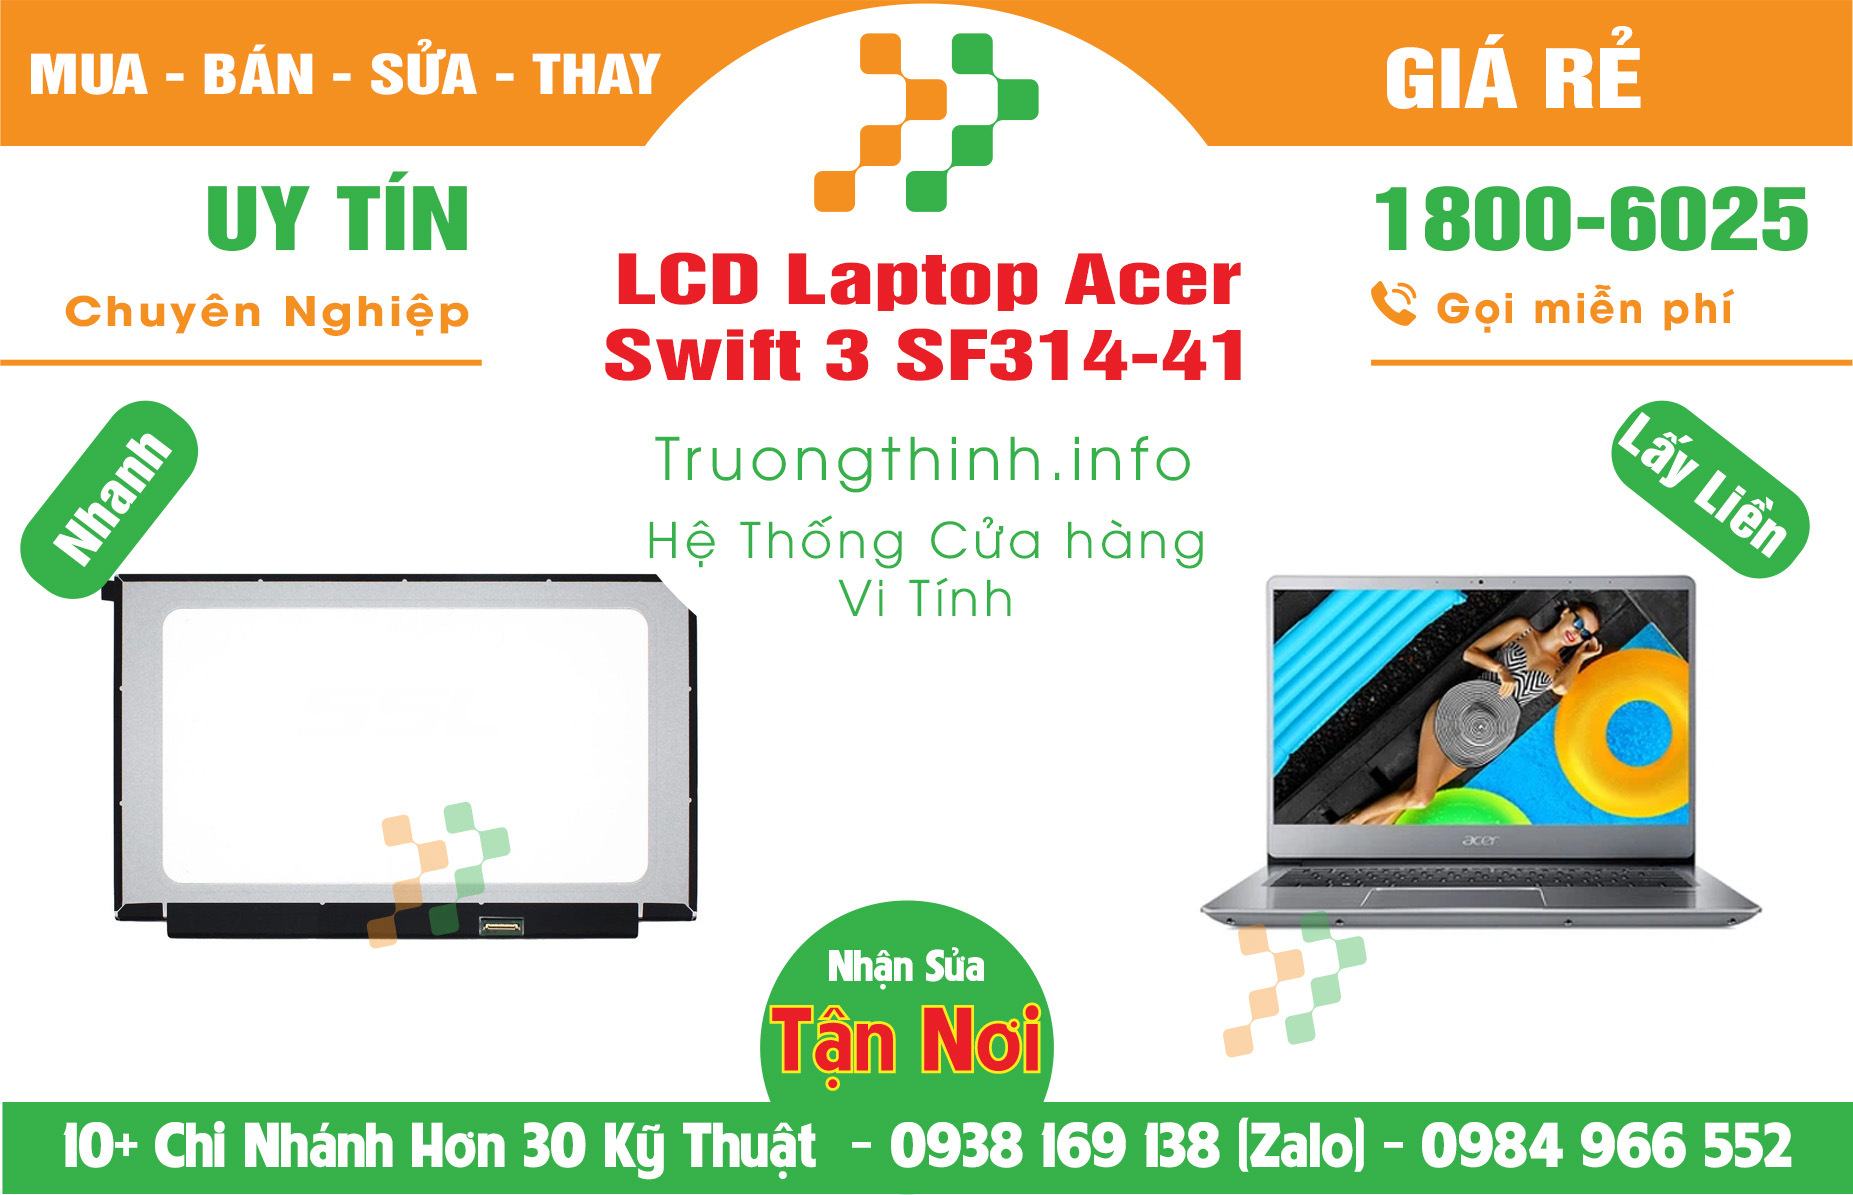 Mua Màn Hình Laptop Acer Swift 3 SF314-41 Giá Rẻ | Máy Tính Trường Thịnh Giá Rẻ